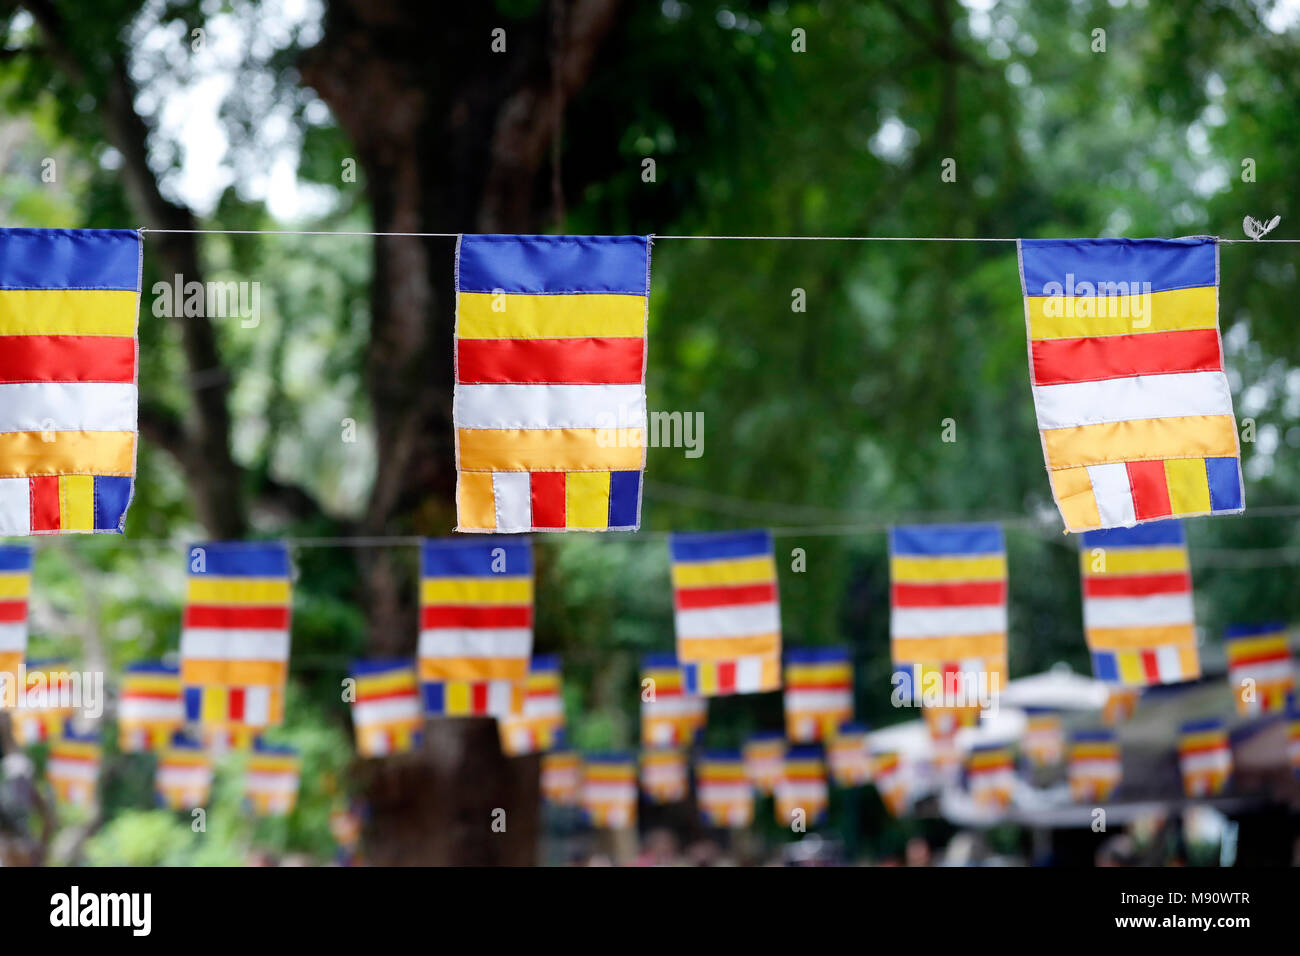 Die Buddhistische Flagge ist ein Flag im späten 19. Jahrhundert entworfen, um zu symbolisieren, und universell Buddhismus dar. Hanoi. Vietnam. Stockfoto